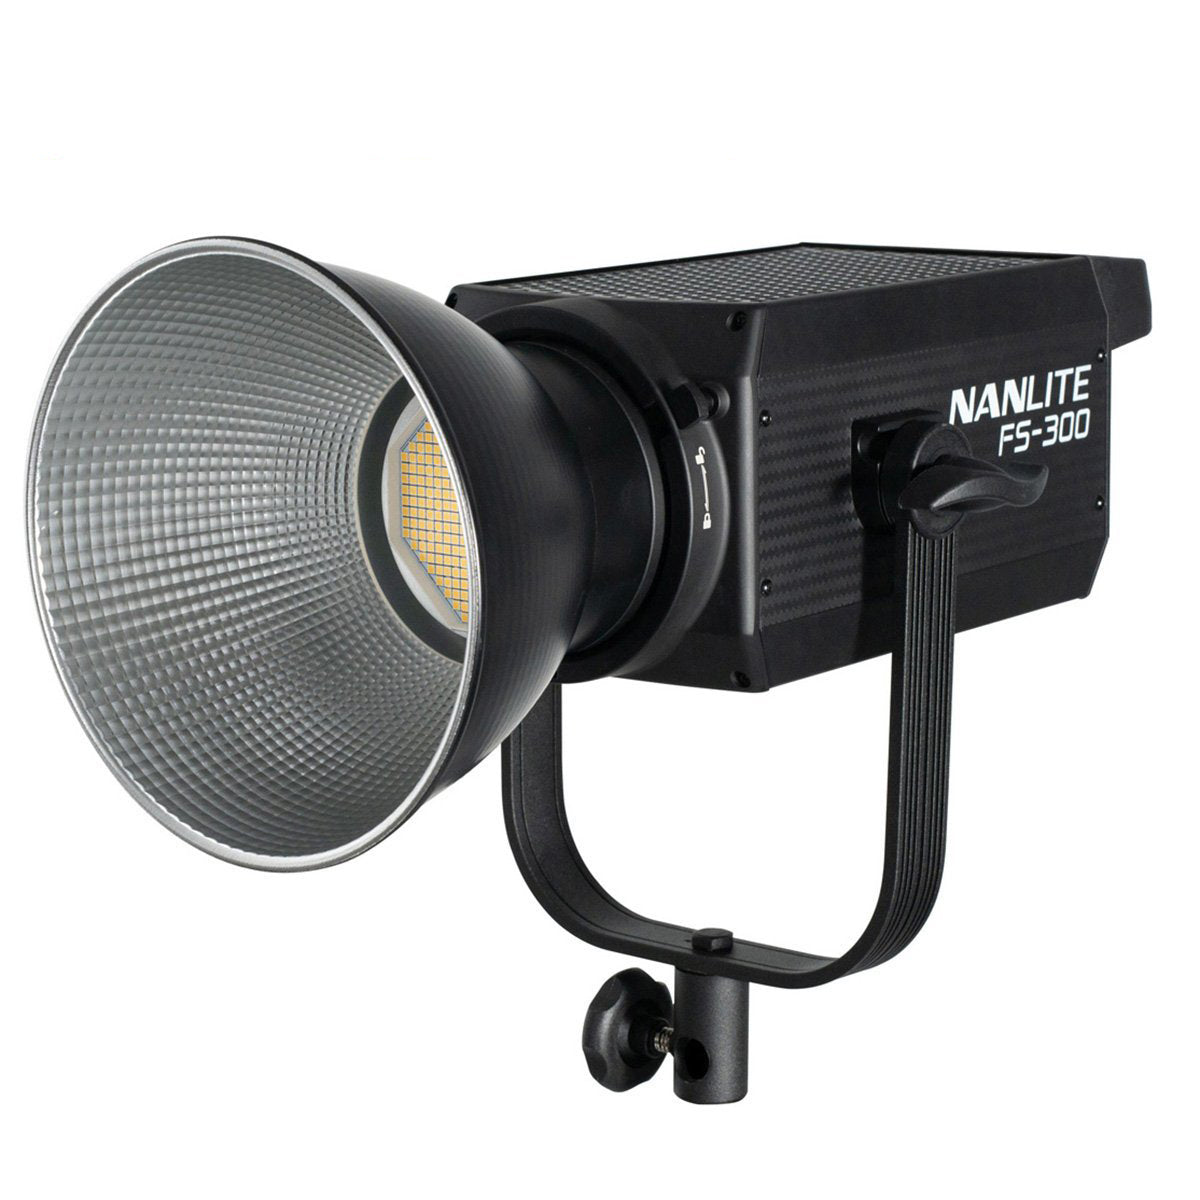 NANLITE FS-300 ナンライト 撮影用ライト スタジオライト LEDライト 動画撮影 ライブ配信 高輝度 330W 5600K C –  NANLITE JAPAN